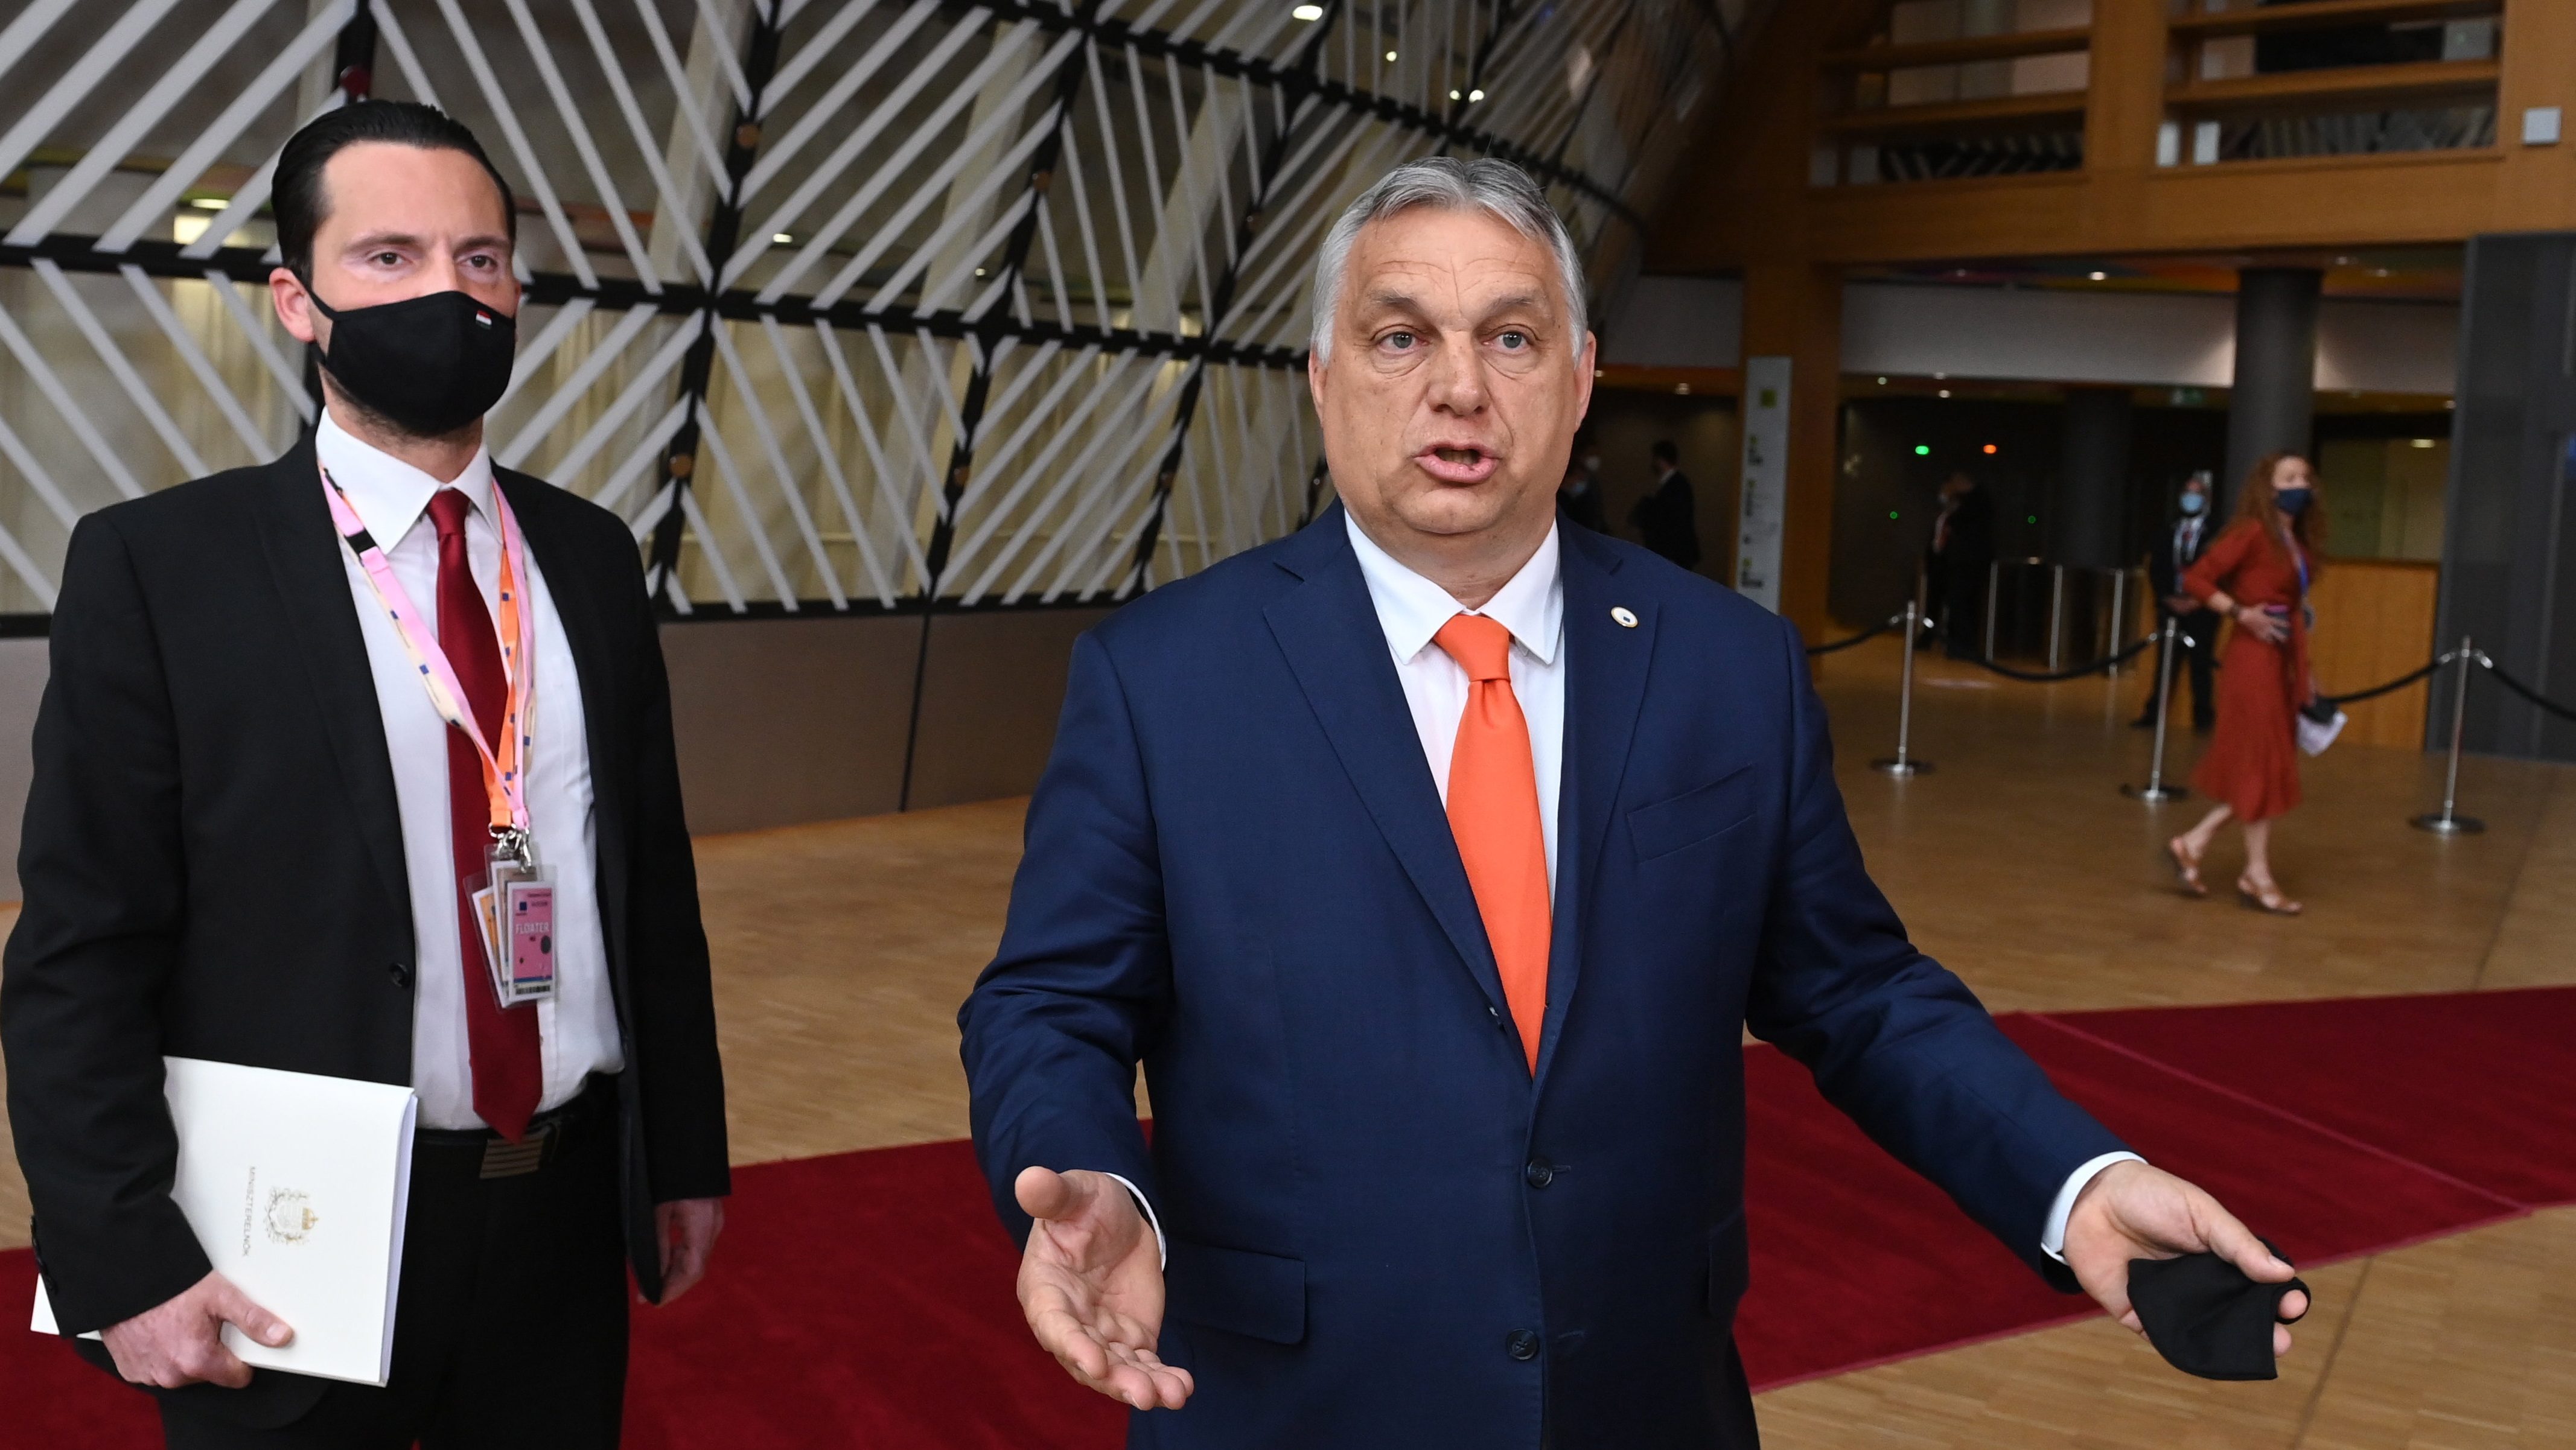 Német kormányszóvivő Orbán leminősítéséről: Kritikusan viszonyulunk a magyar sajtóban mutatkozó folyamatokhoz